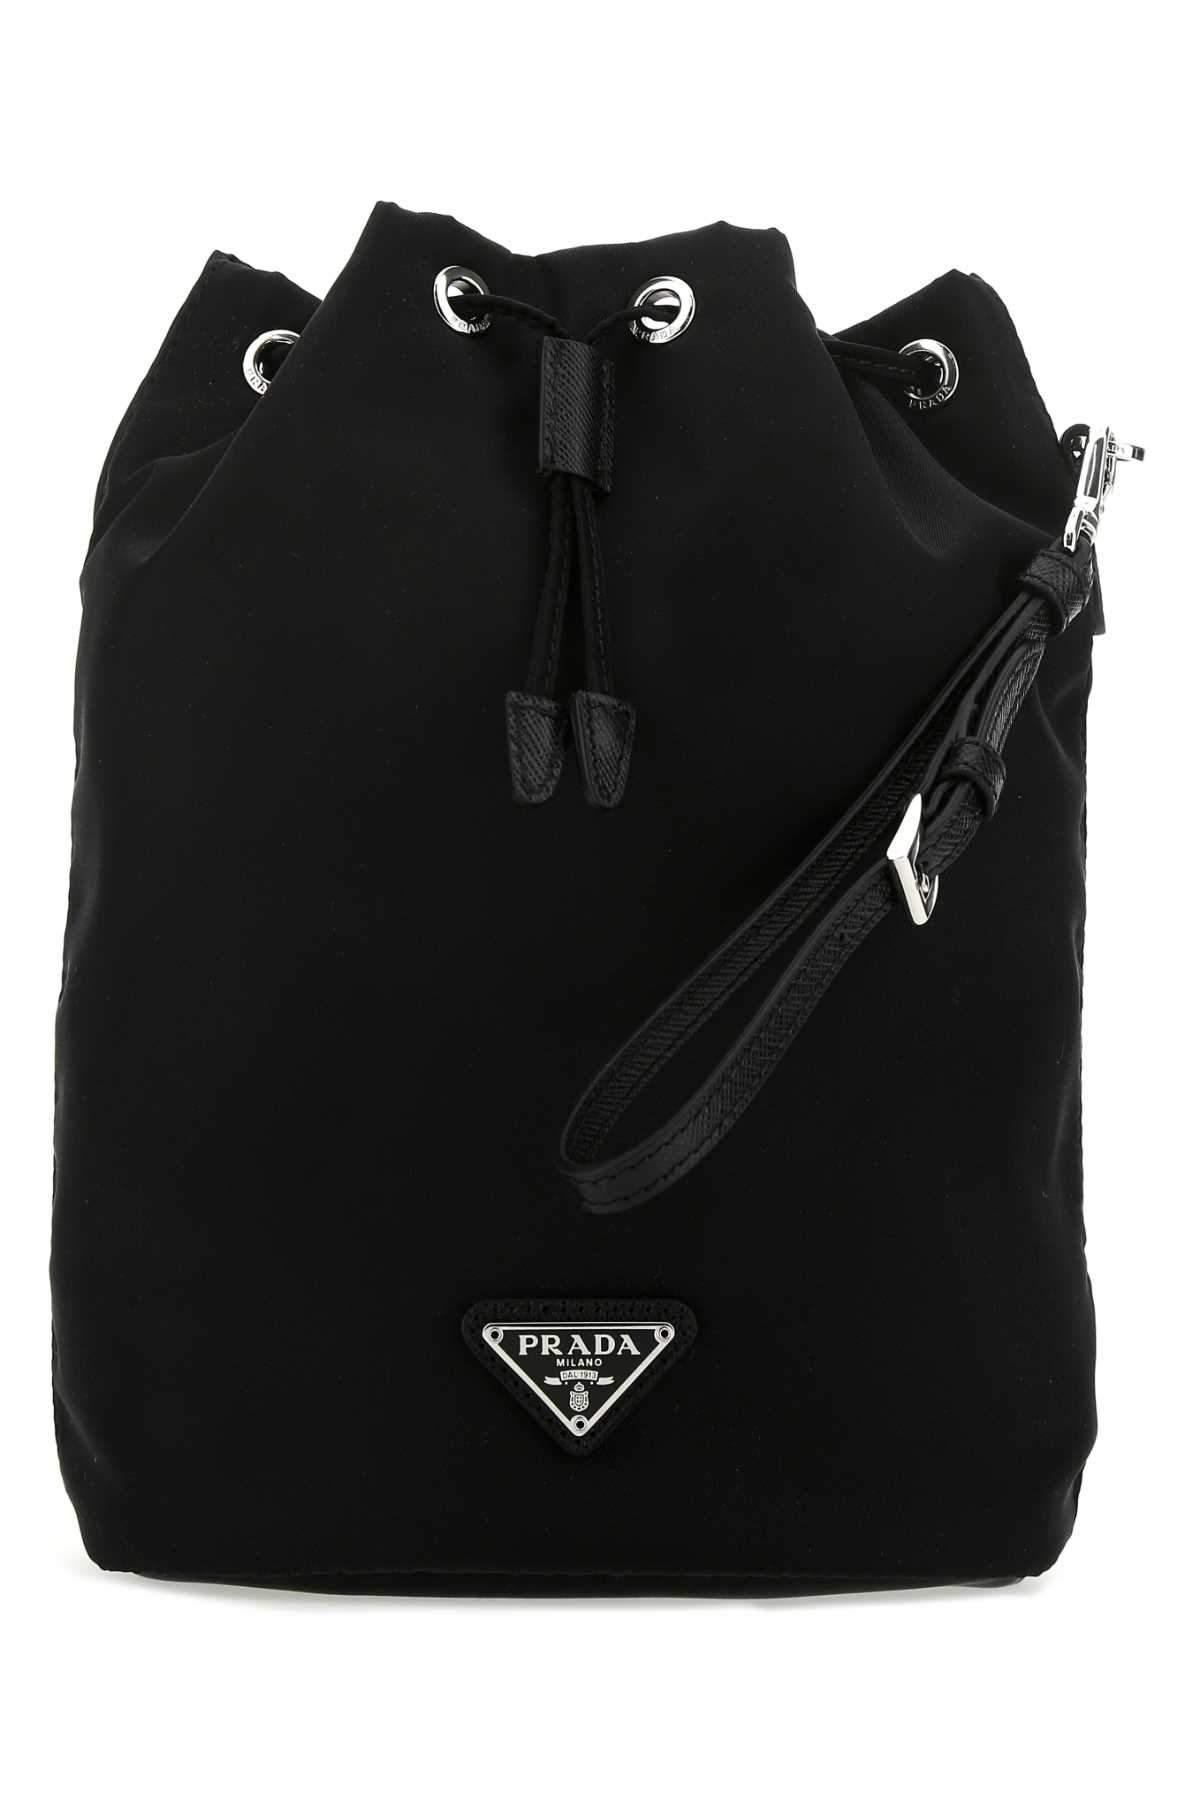 Prada Logo Plaque Drawstring Pouch Bag in Black | Lyst